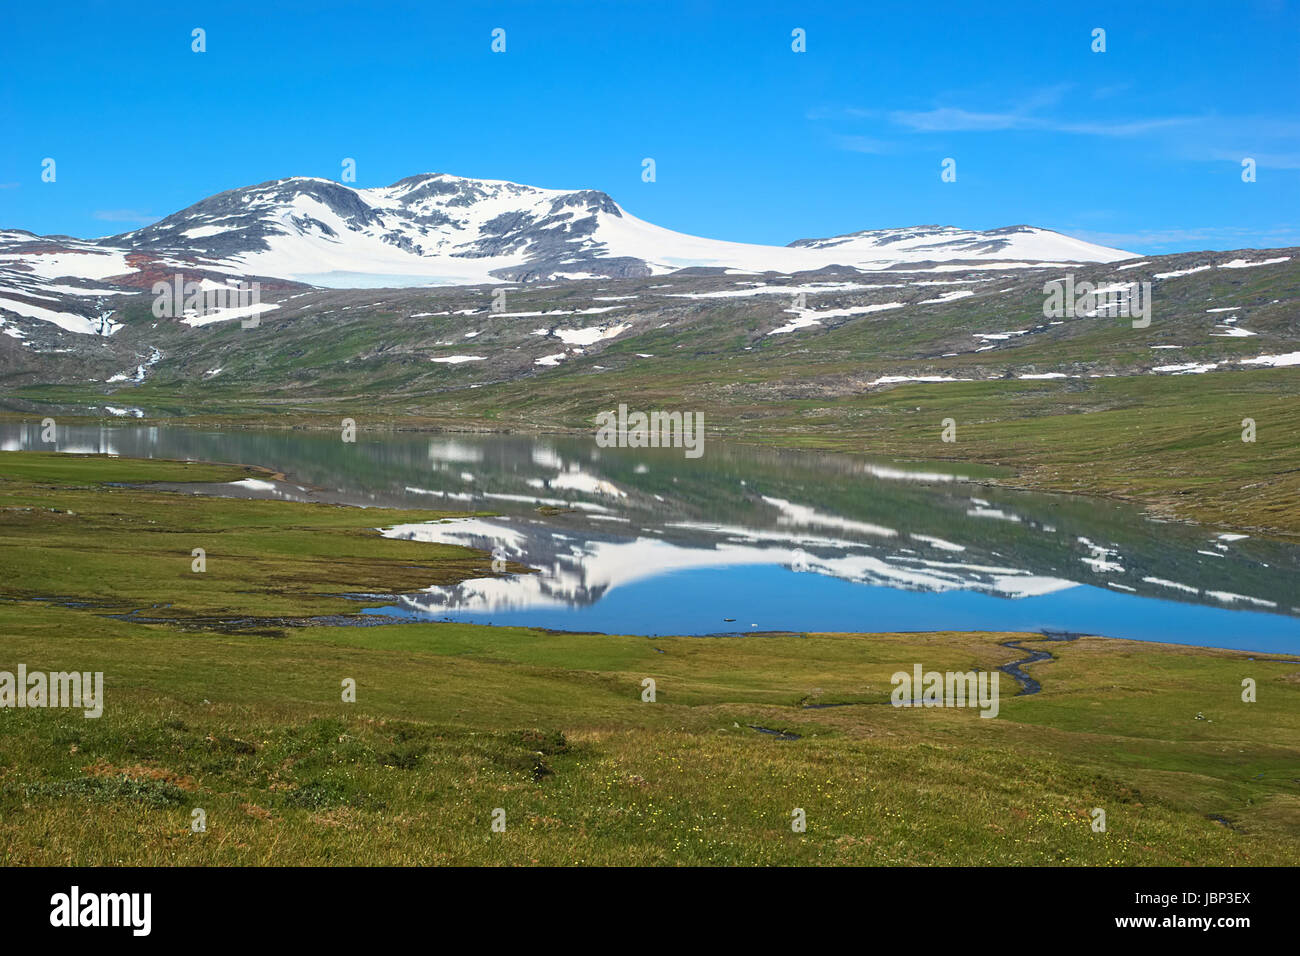 Fjell-Landschaft in Nord-Norwegen im Sommer: karge Berge schneebedeckt spiegelt sich in einem kleinen See, umgeben von grasbedeckten Felder Stockfoto